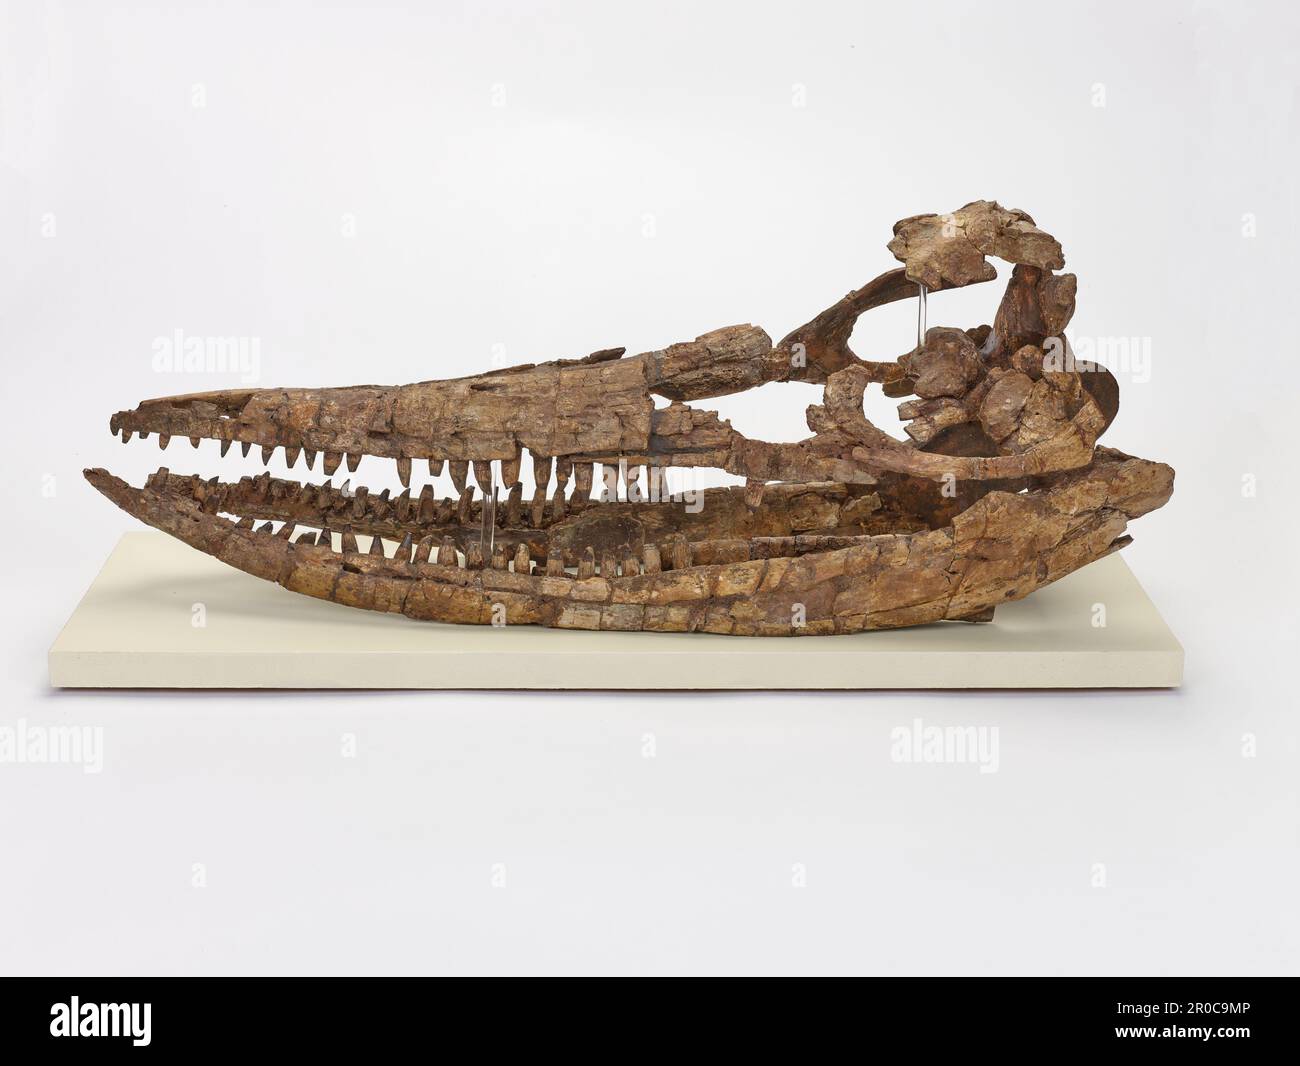 Ichthyosaur (Protoichthyosaurus prostaxalis) 3D scheletro fossile. Protoichthyosaurus prostaxalis scheletro fossile da Jurassic inferiore di Shipston-on-Stour in Warwickshire, conservato in tre dimensioni e privo di matrice comprende cranio, paddle anteriore sinistra e paddle posteriori parzialmente sinistra, alcune vertebre e costole... Inoltre ora include la replica completa il campione; paddle anteriore destra, ossa paddle posteriore sinistra e paddle destro e vertebre... Pubblicato in: Lomax DR, Porro LB, Larkin NR. 2019. Anatomia descrittiva del più grande campione noto di protoittiosaurus prostaxalis (rettilia: Ichthyosauri Foto Stock